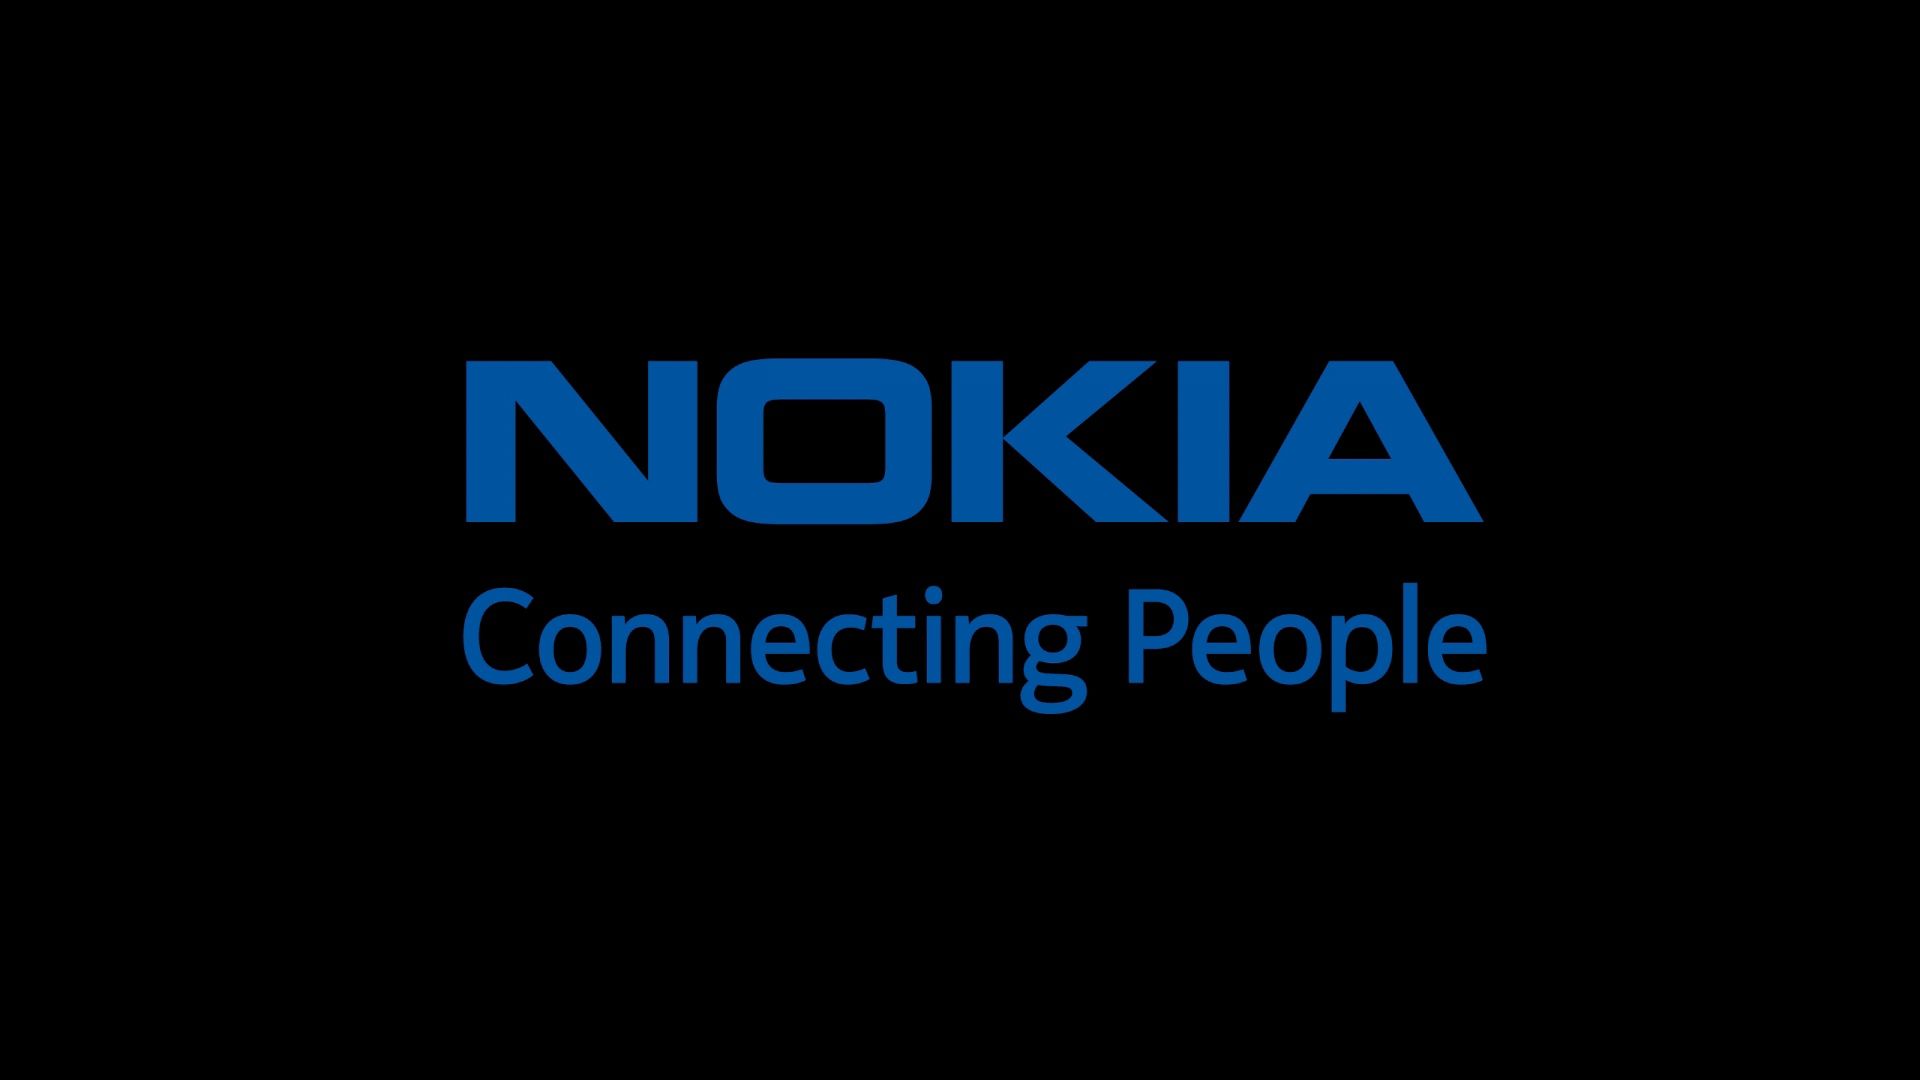 Nokia Logo Wallpaper Free Nokia Logo Background